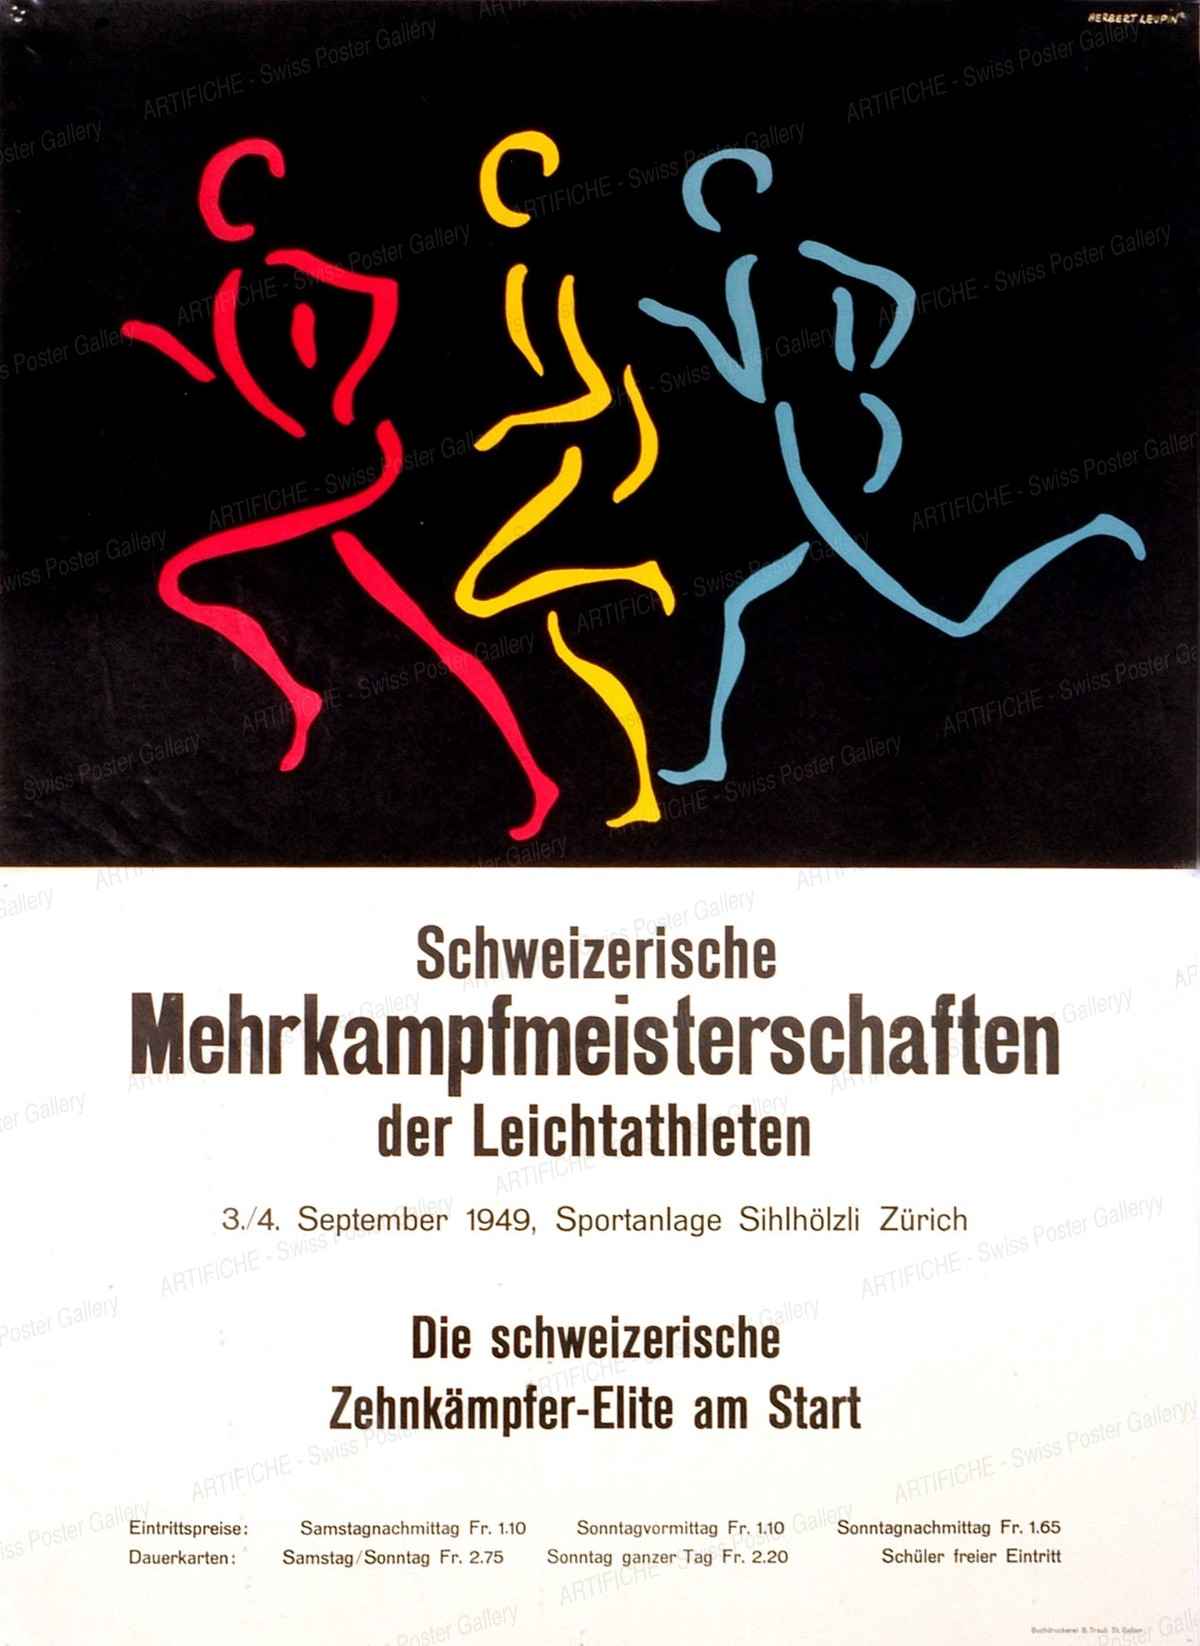 Athletics Meeting Zurich 1949, Herbert Leupin